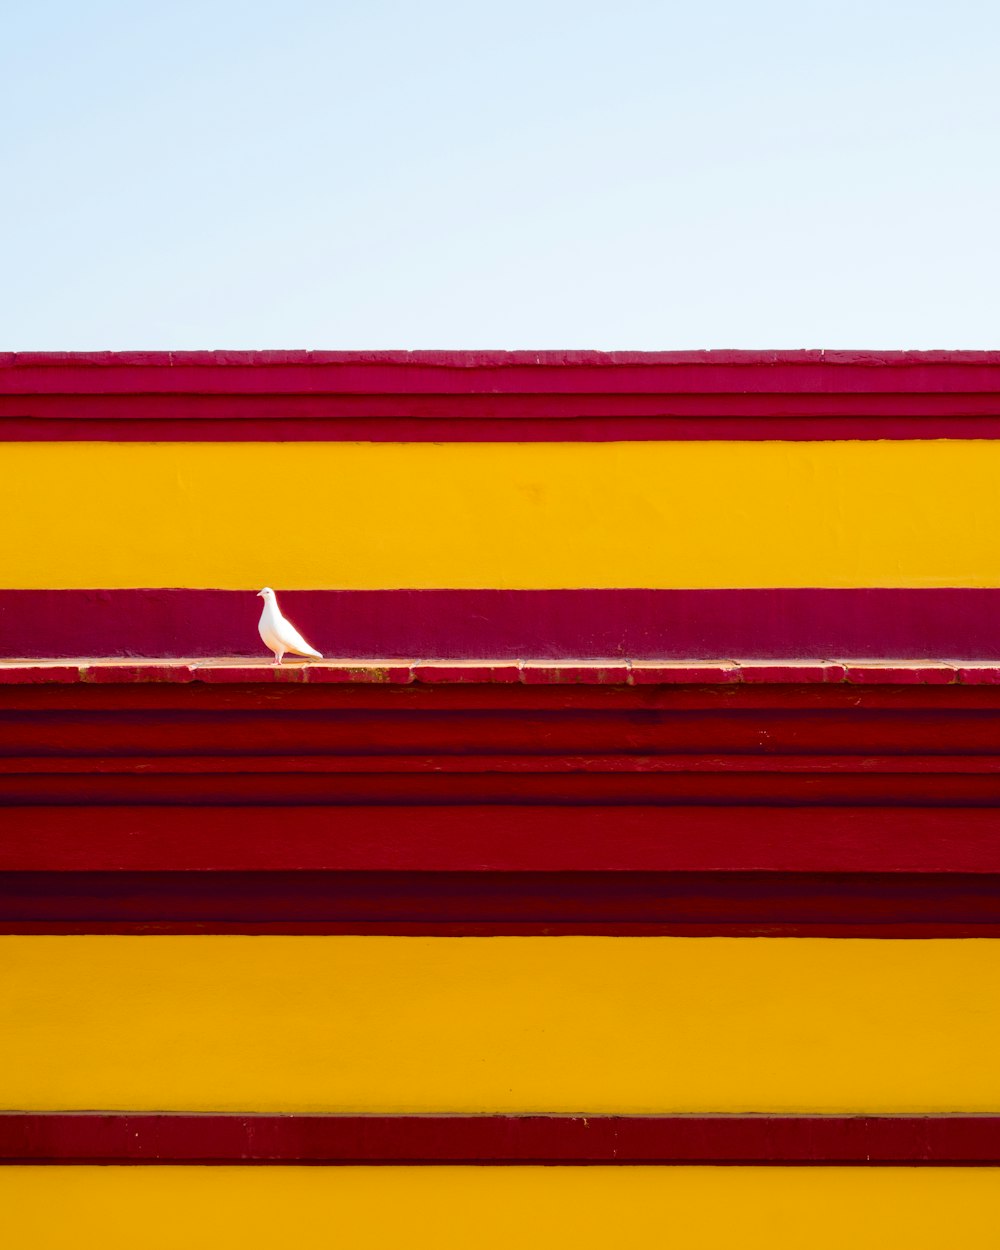 um pássaro branco sentado no topo de um edifício vermelho e amarelo